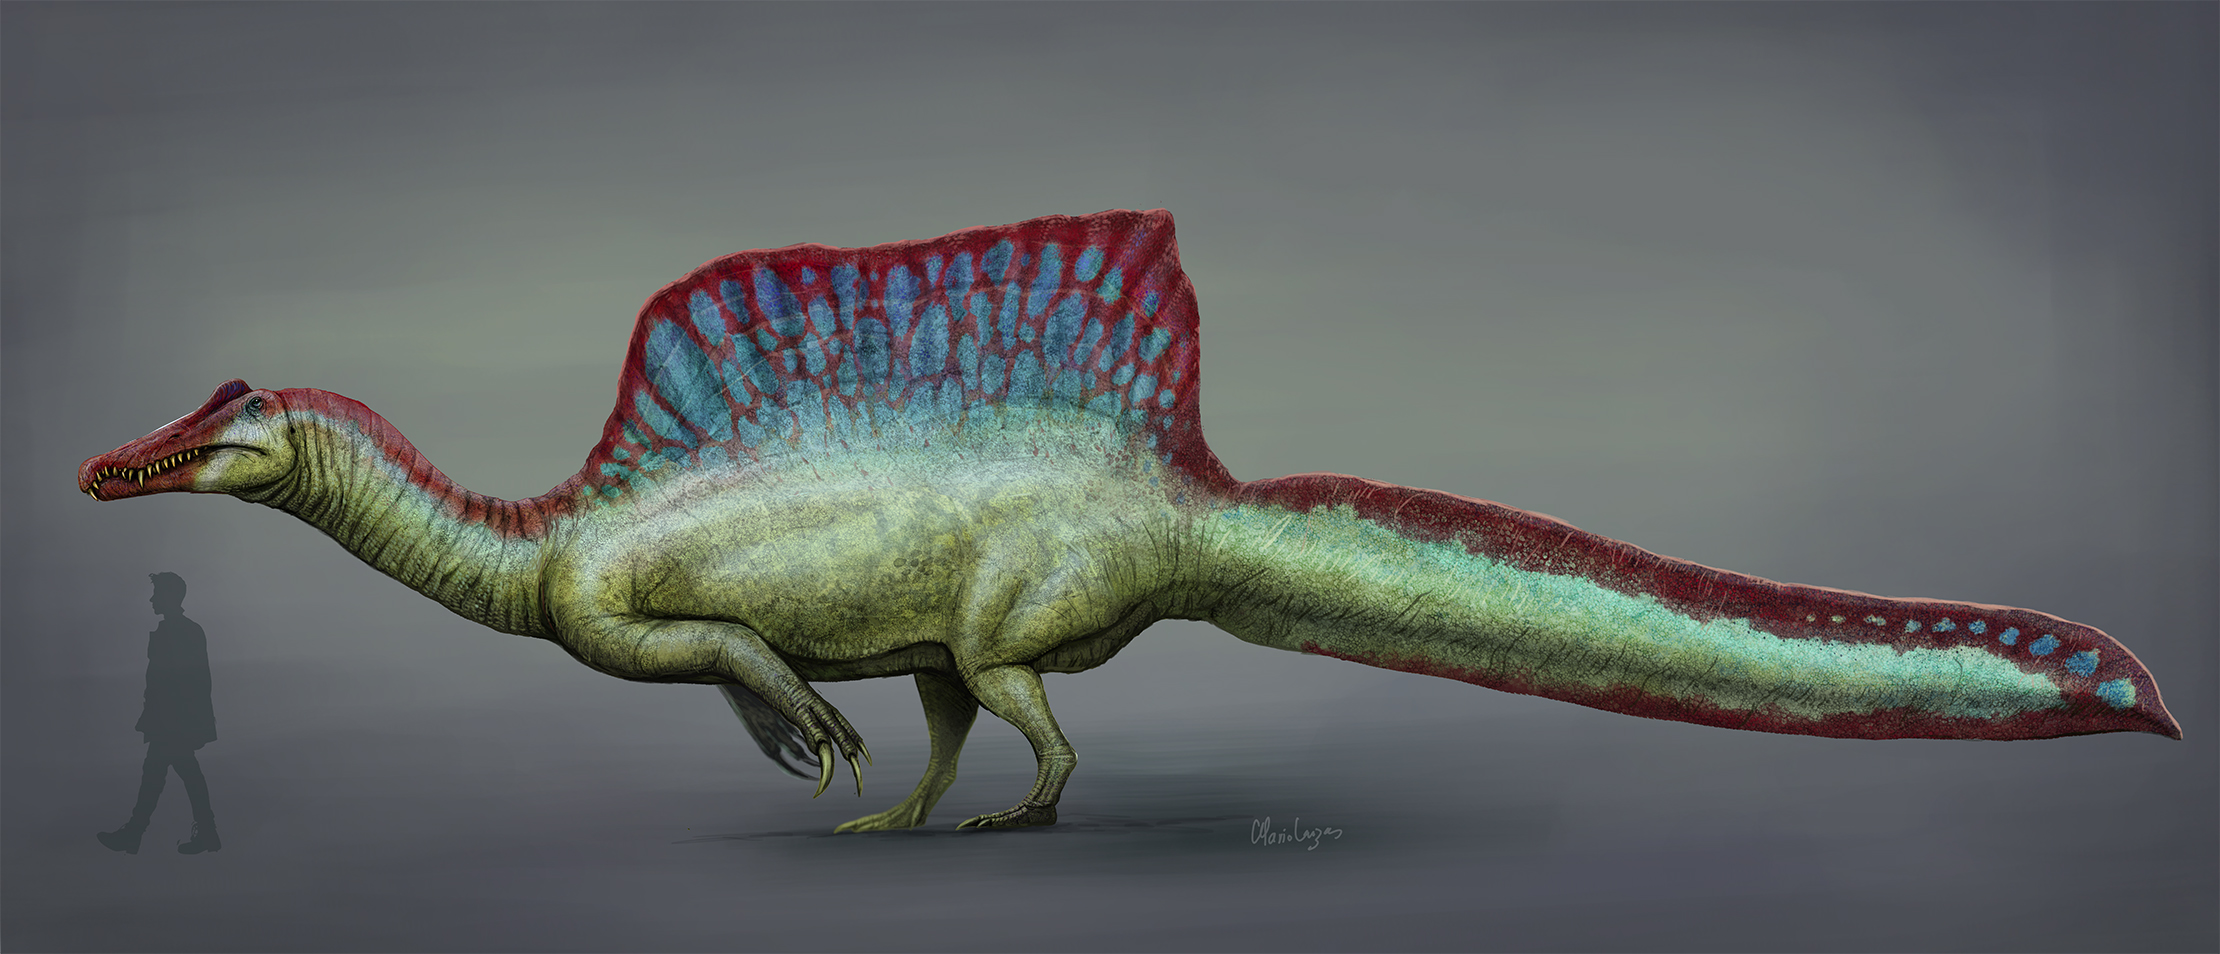 2020年時点のスピノサウルスの生体復元画